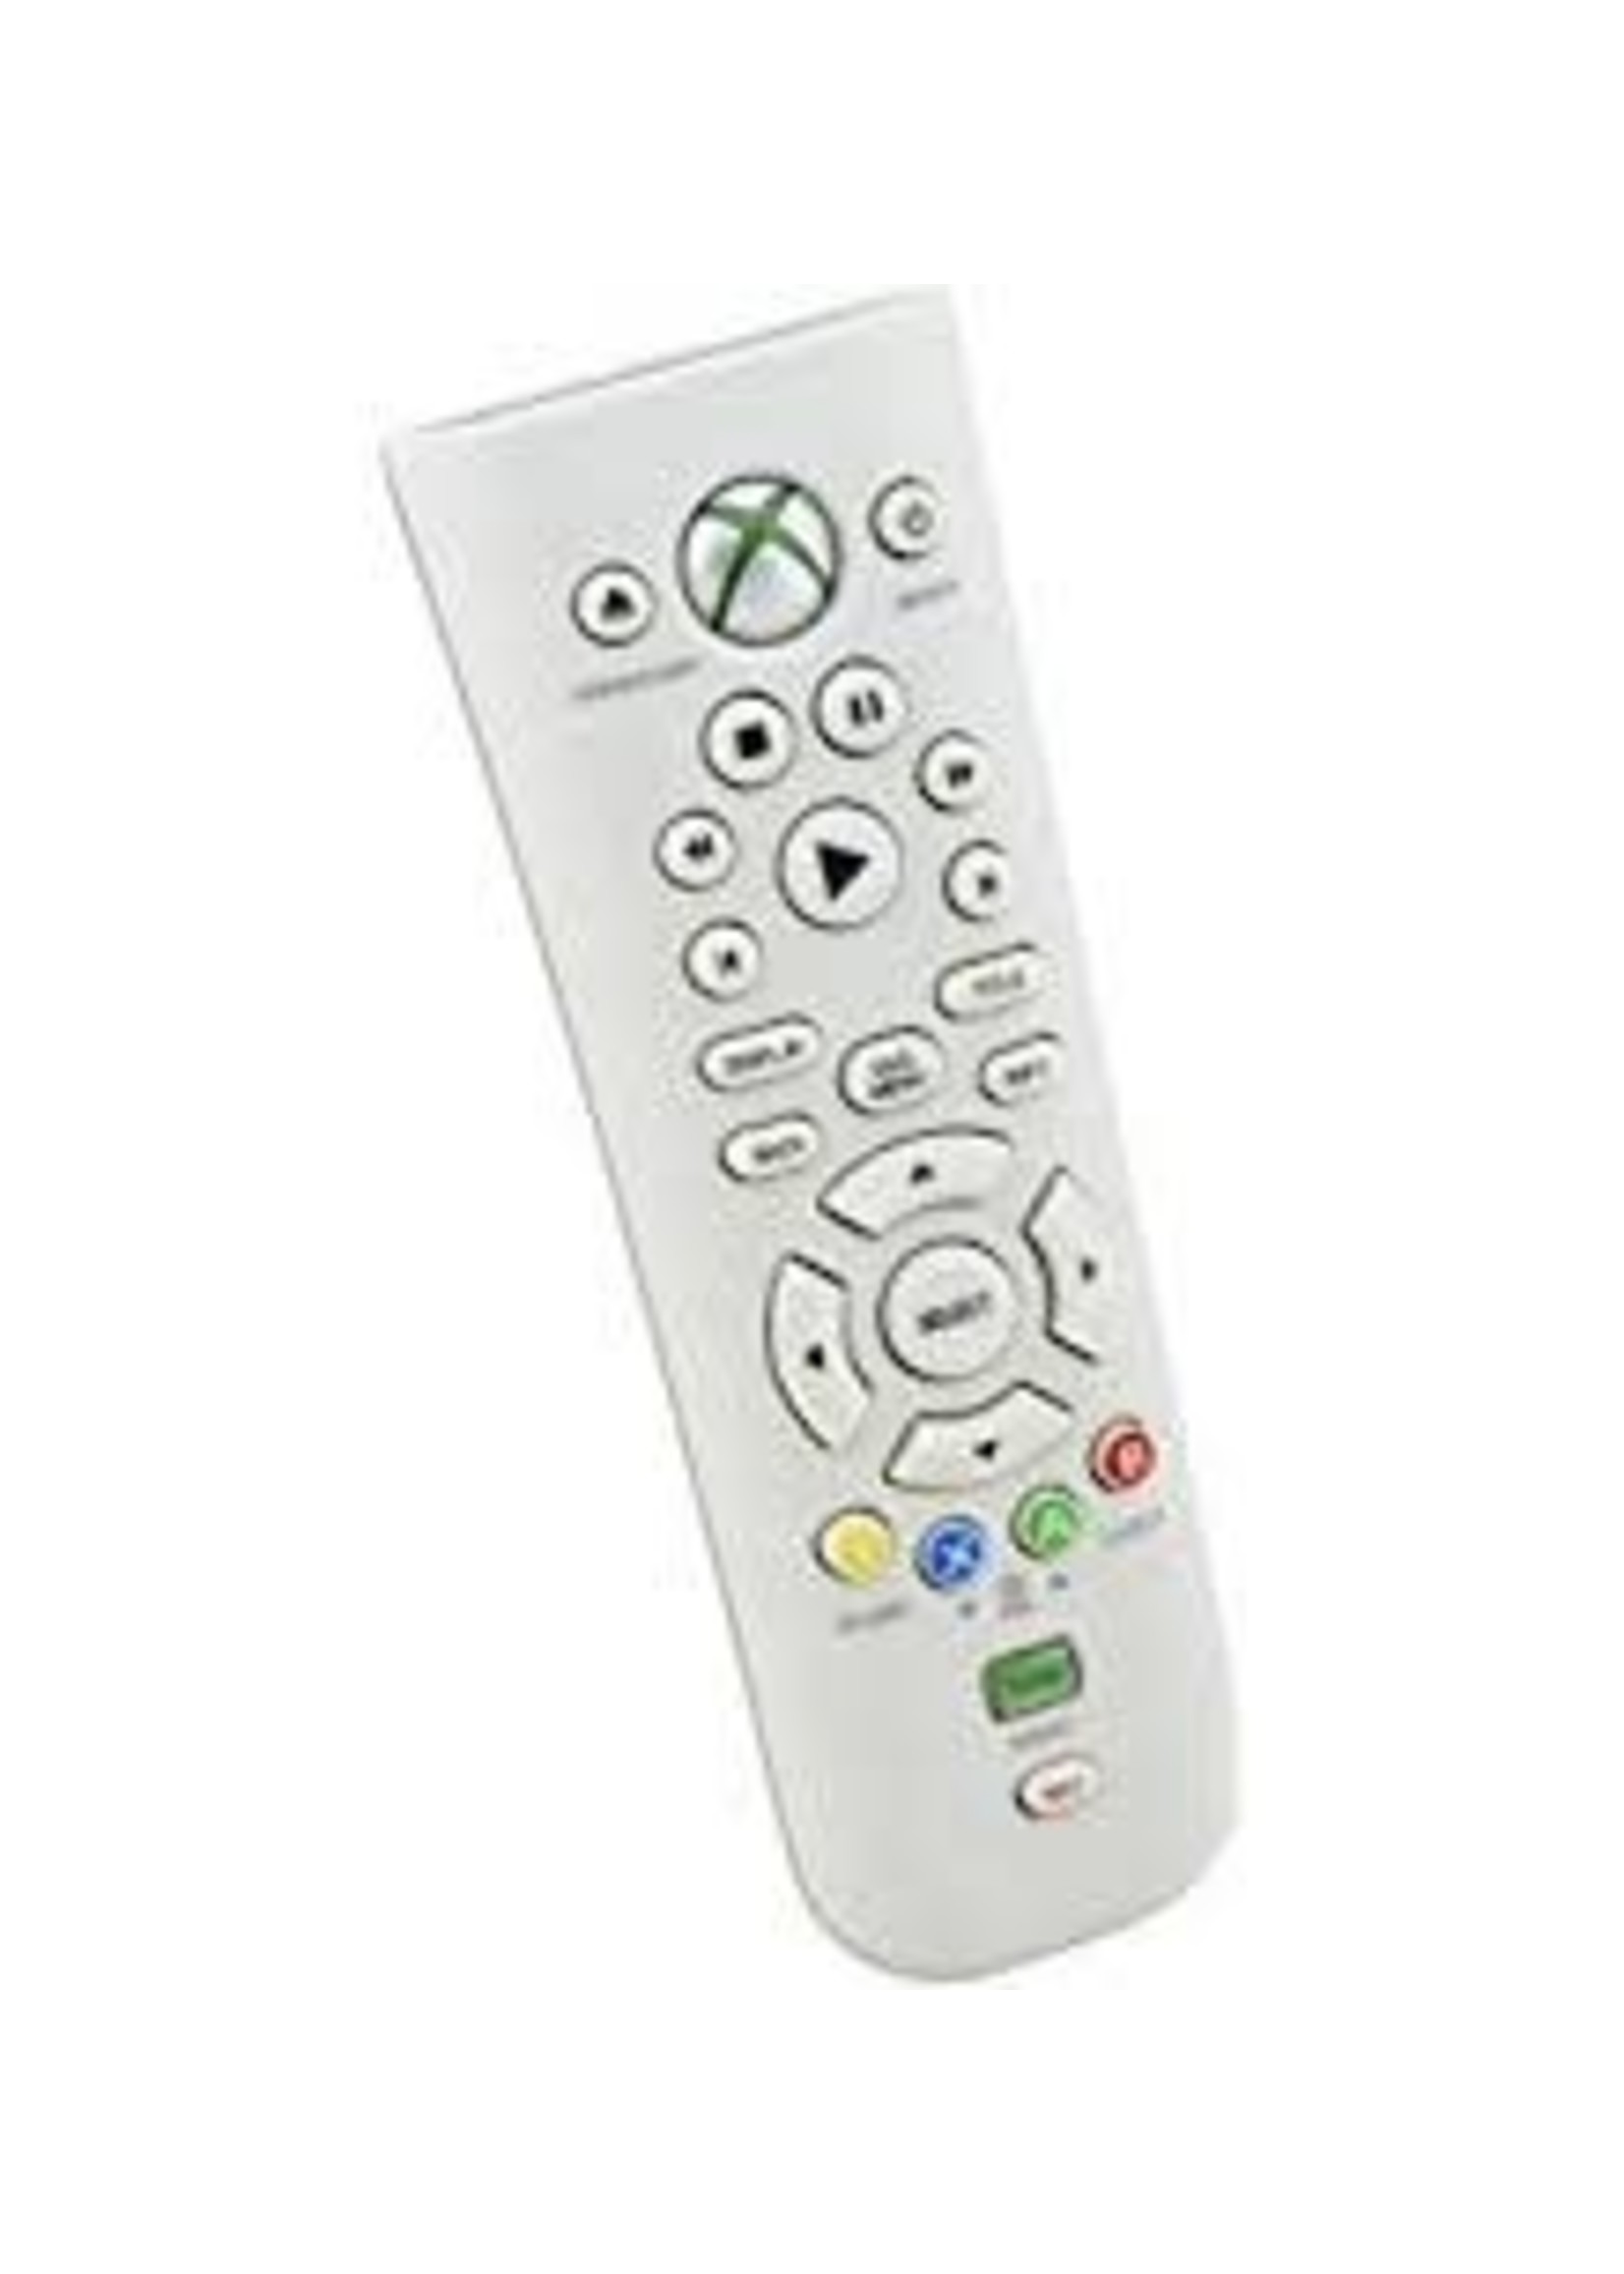 Microsoft Xbox 360 360 Media Remote Controller (Used)